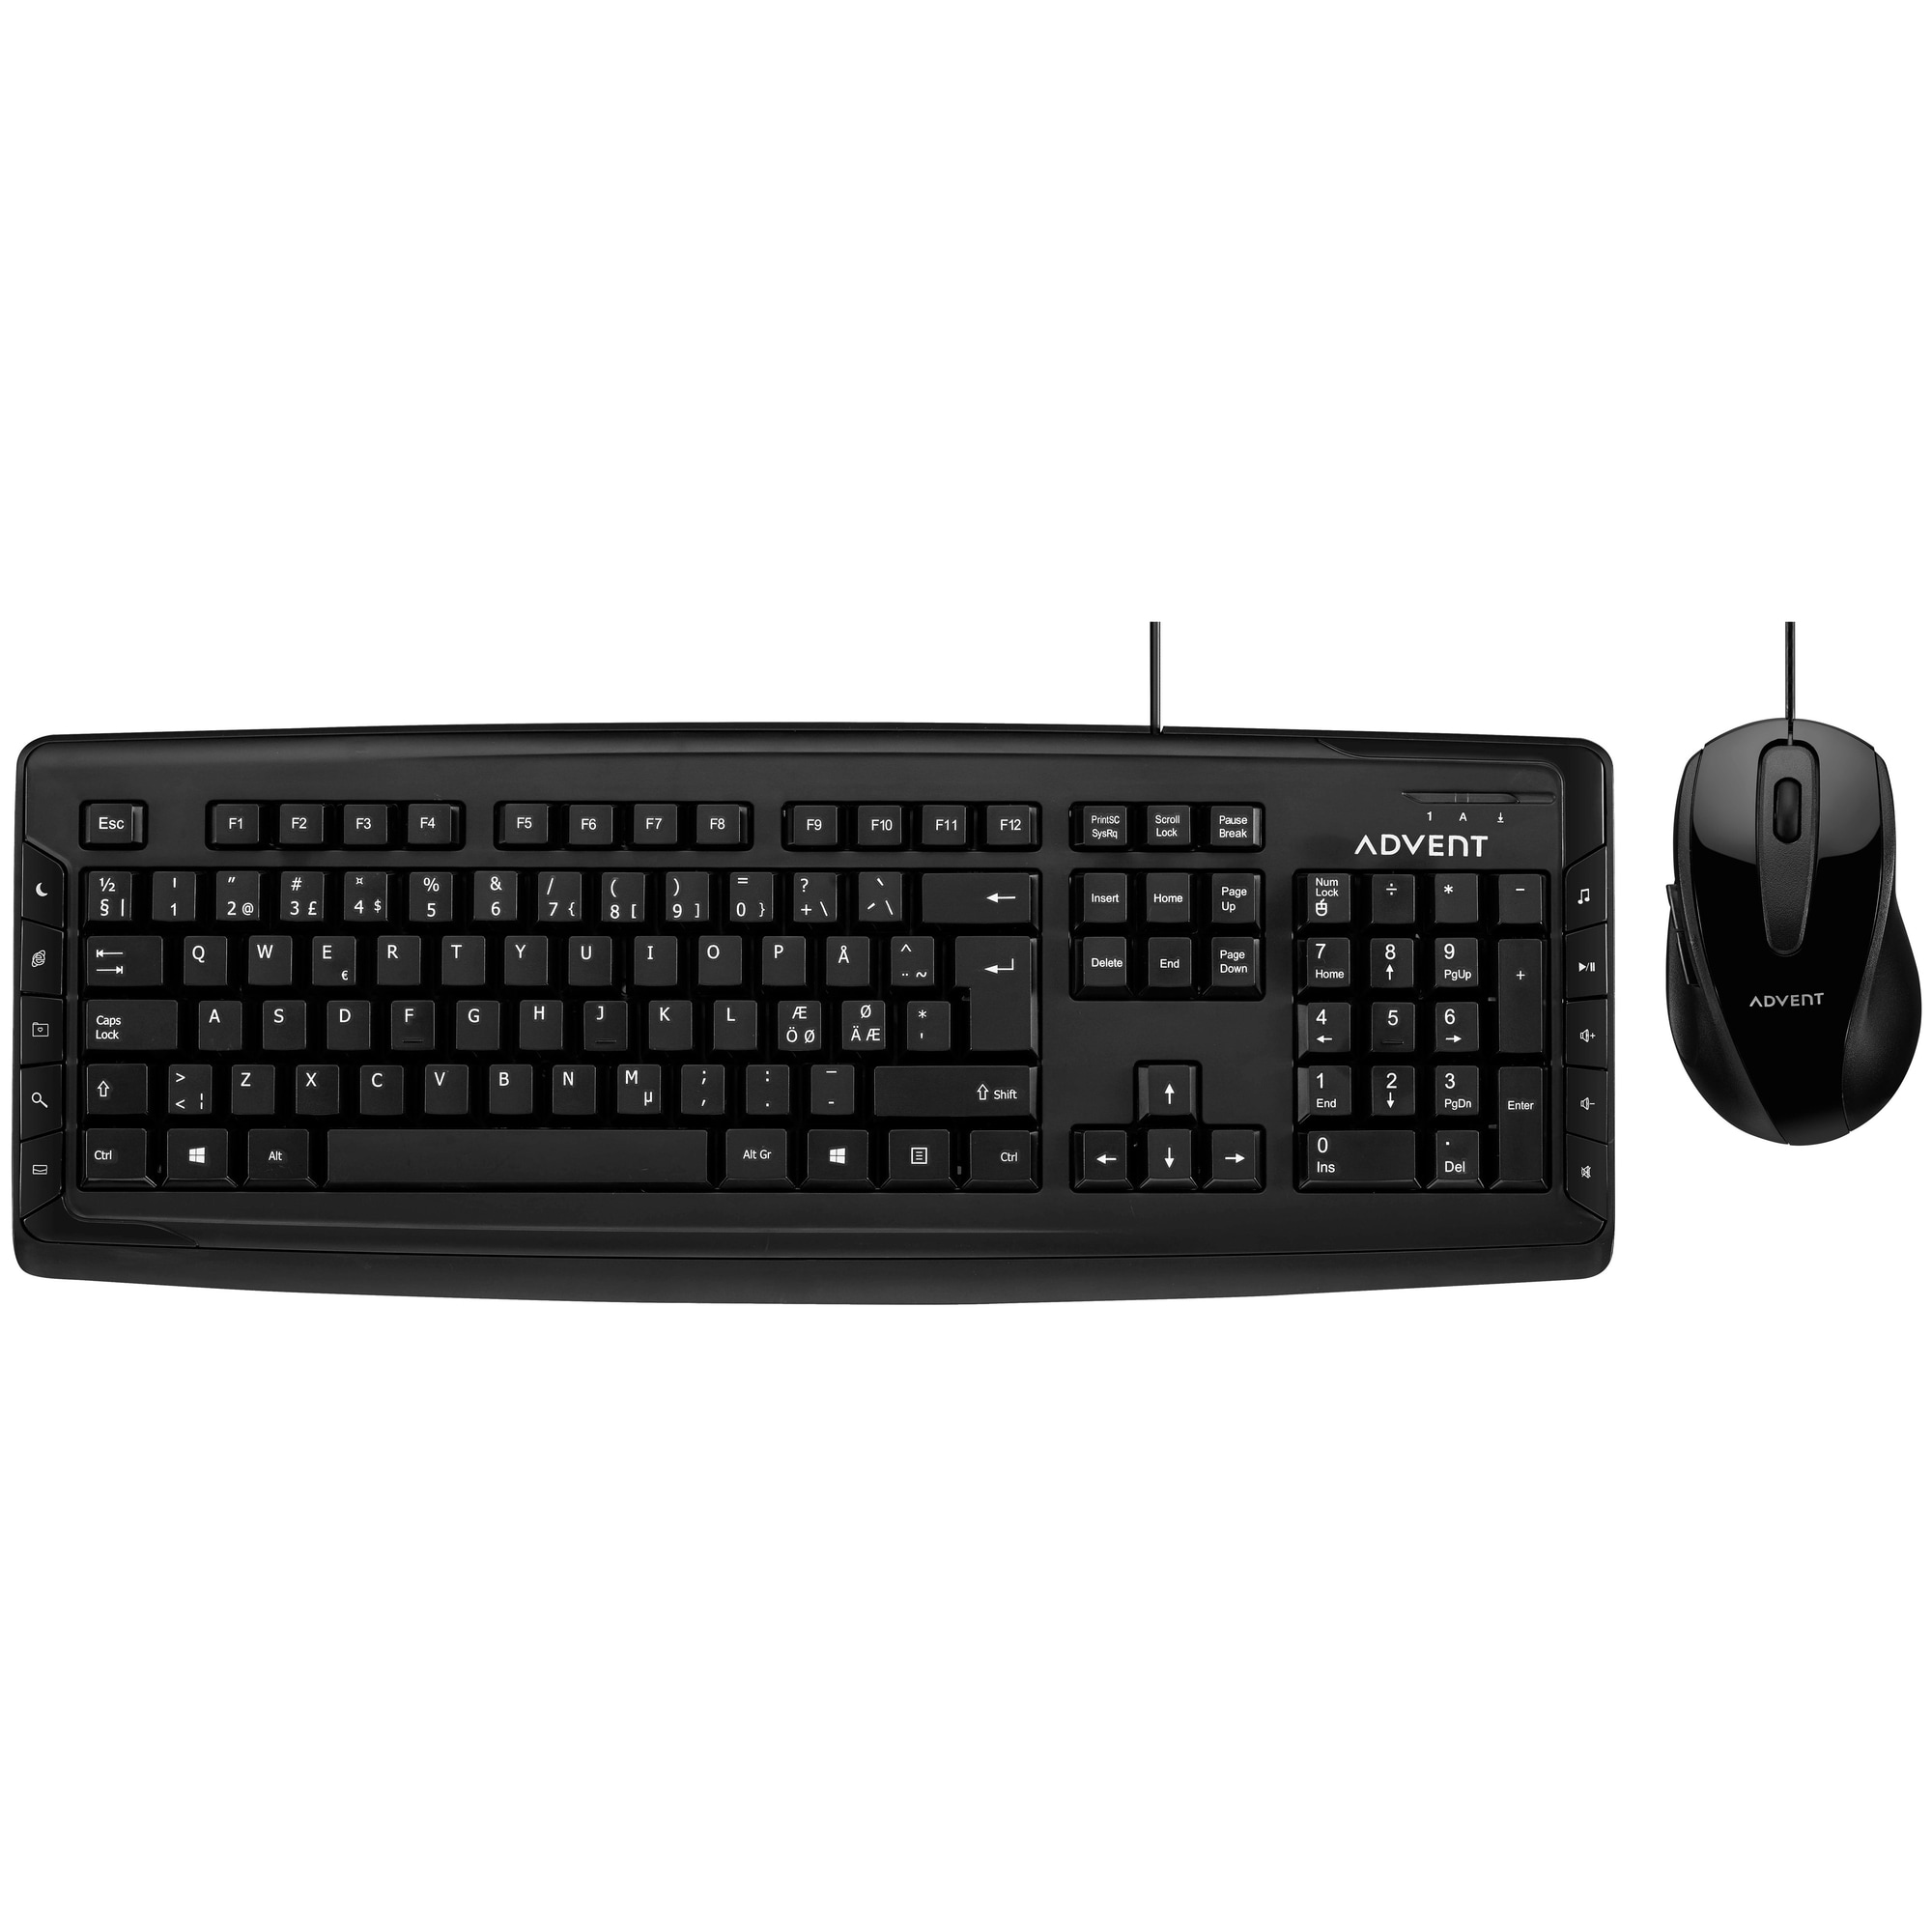 Advent kablet tastatur og mus (sort) - Elkjøp